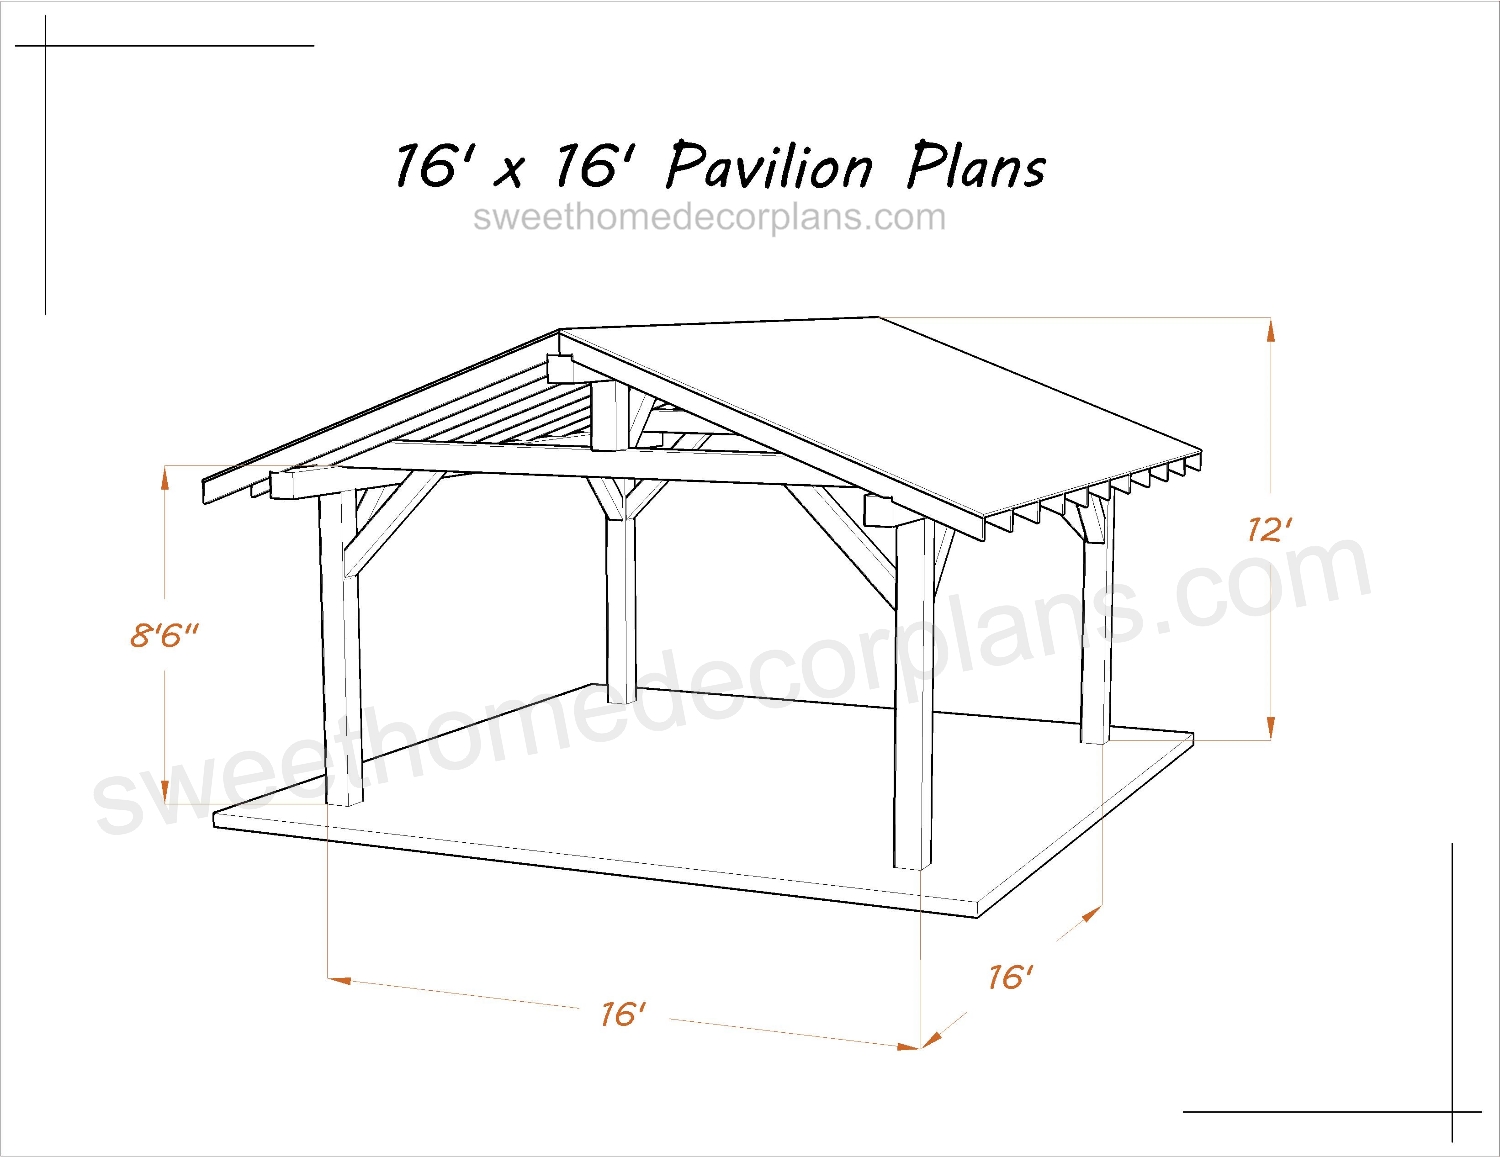 Wooden-diy-16-x-16-gable-pavilion-plans-in-pdf